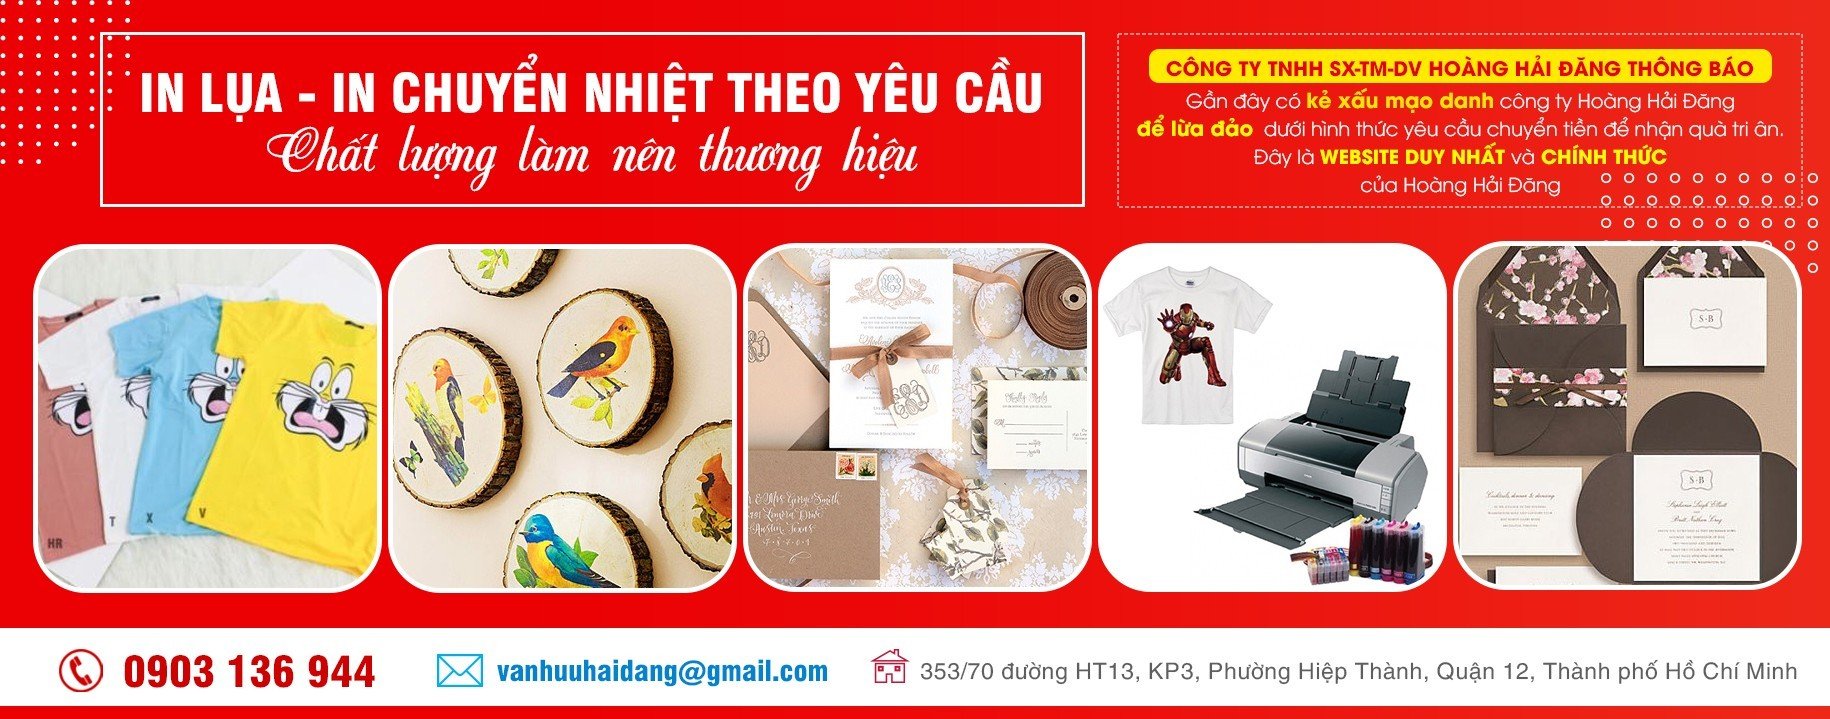 CÔNG TY TNHH SX-TM-DV HOÀNG HẢI ĐĂNG